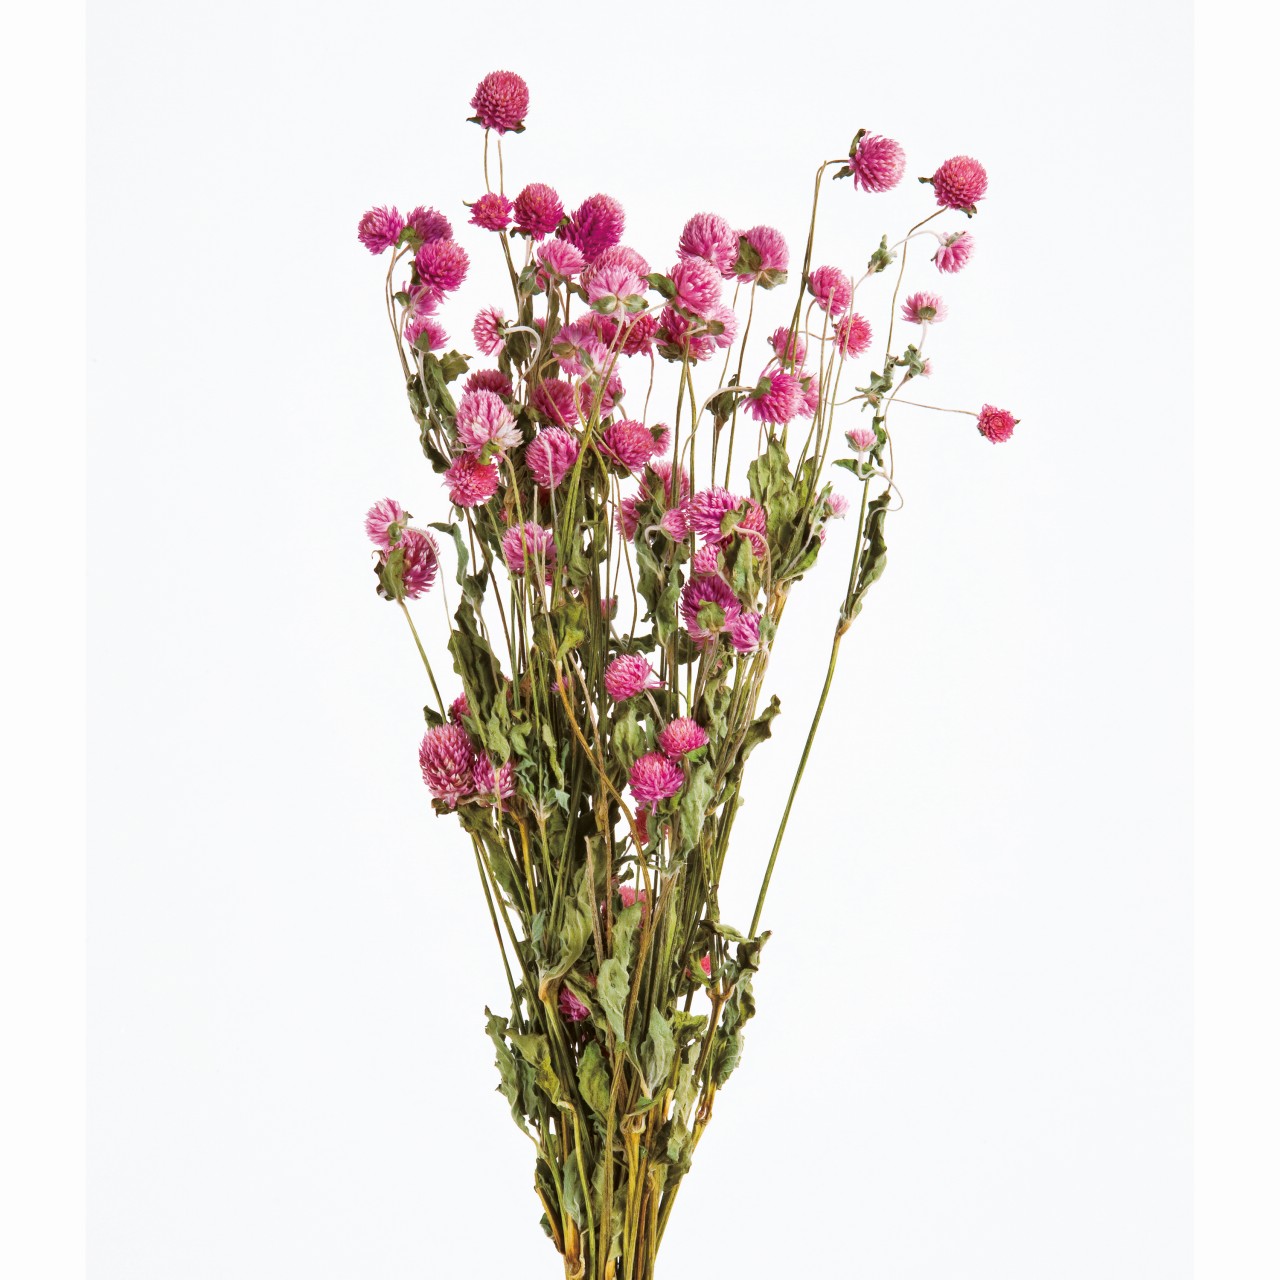 マイフラ】 通販/風の花 千日紅 ピンク ドライフラワー ナチュラル DN000008-002(ピンク): ドライフラワー  ナチュラル素材/全国にMAGIQ、花器、花資材などをお届けします。